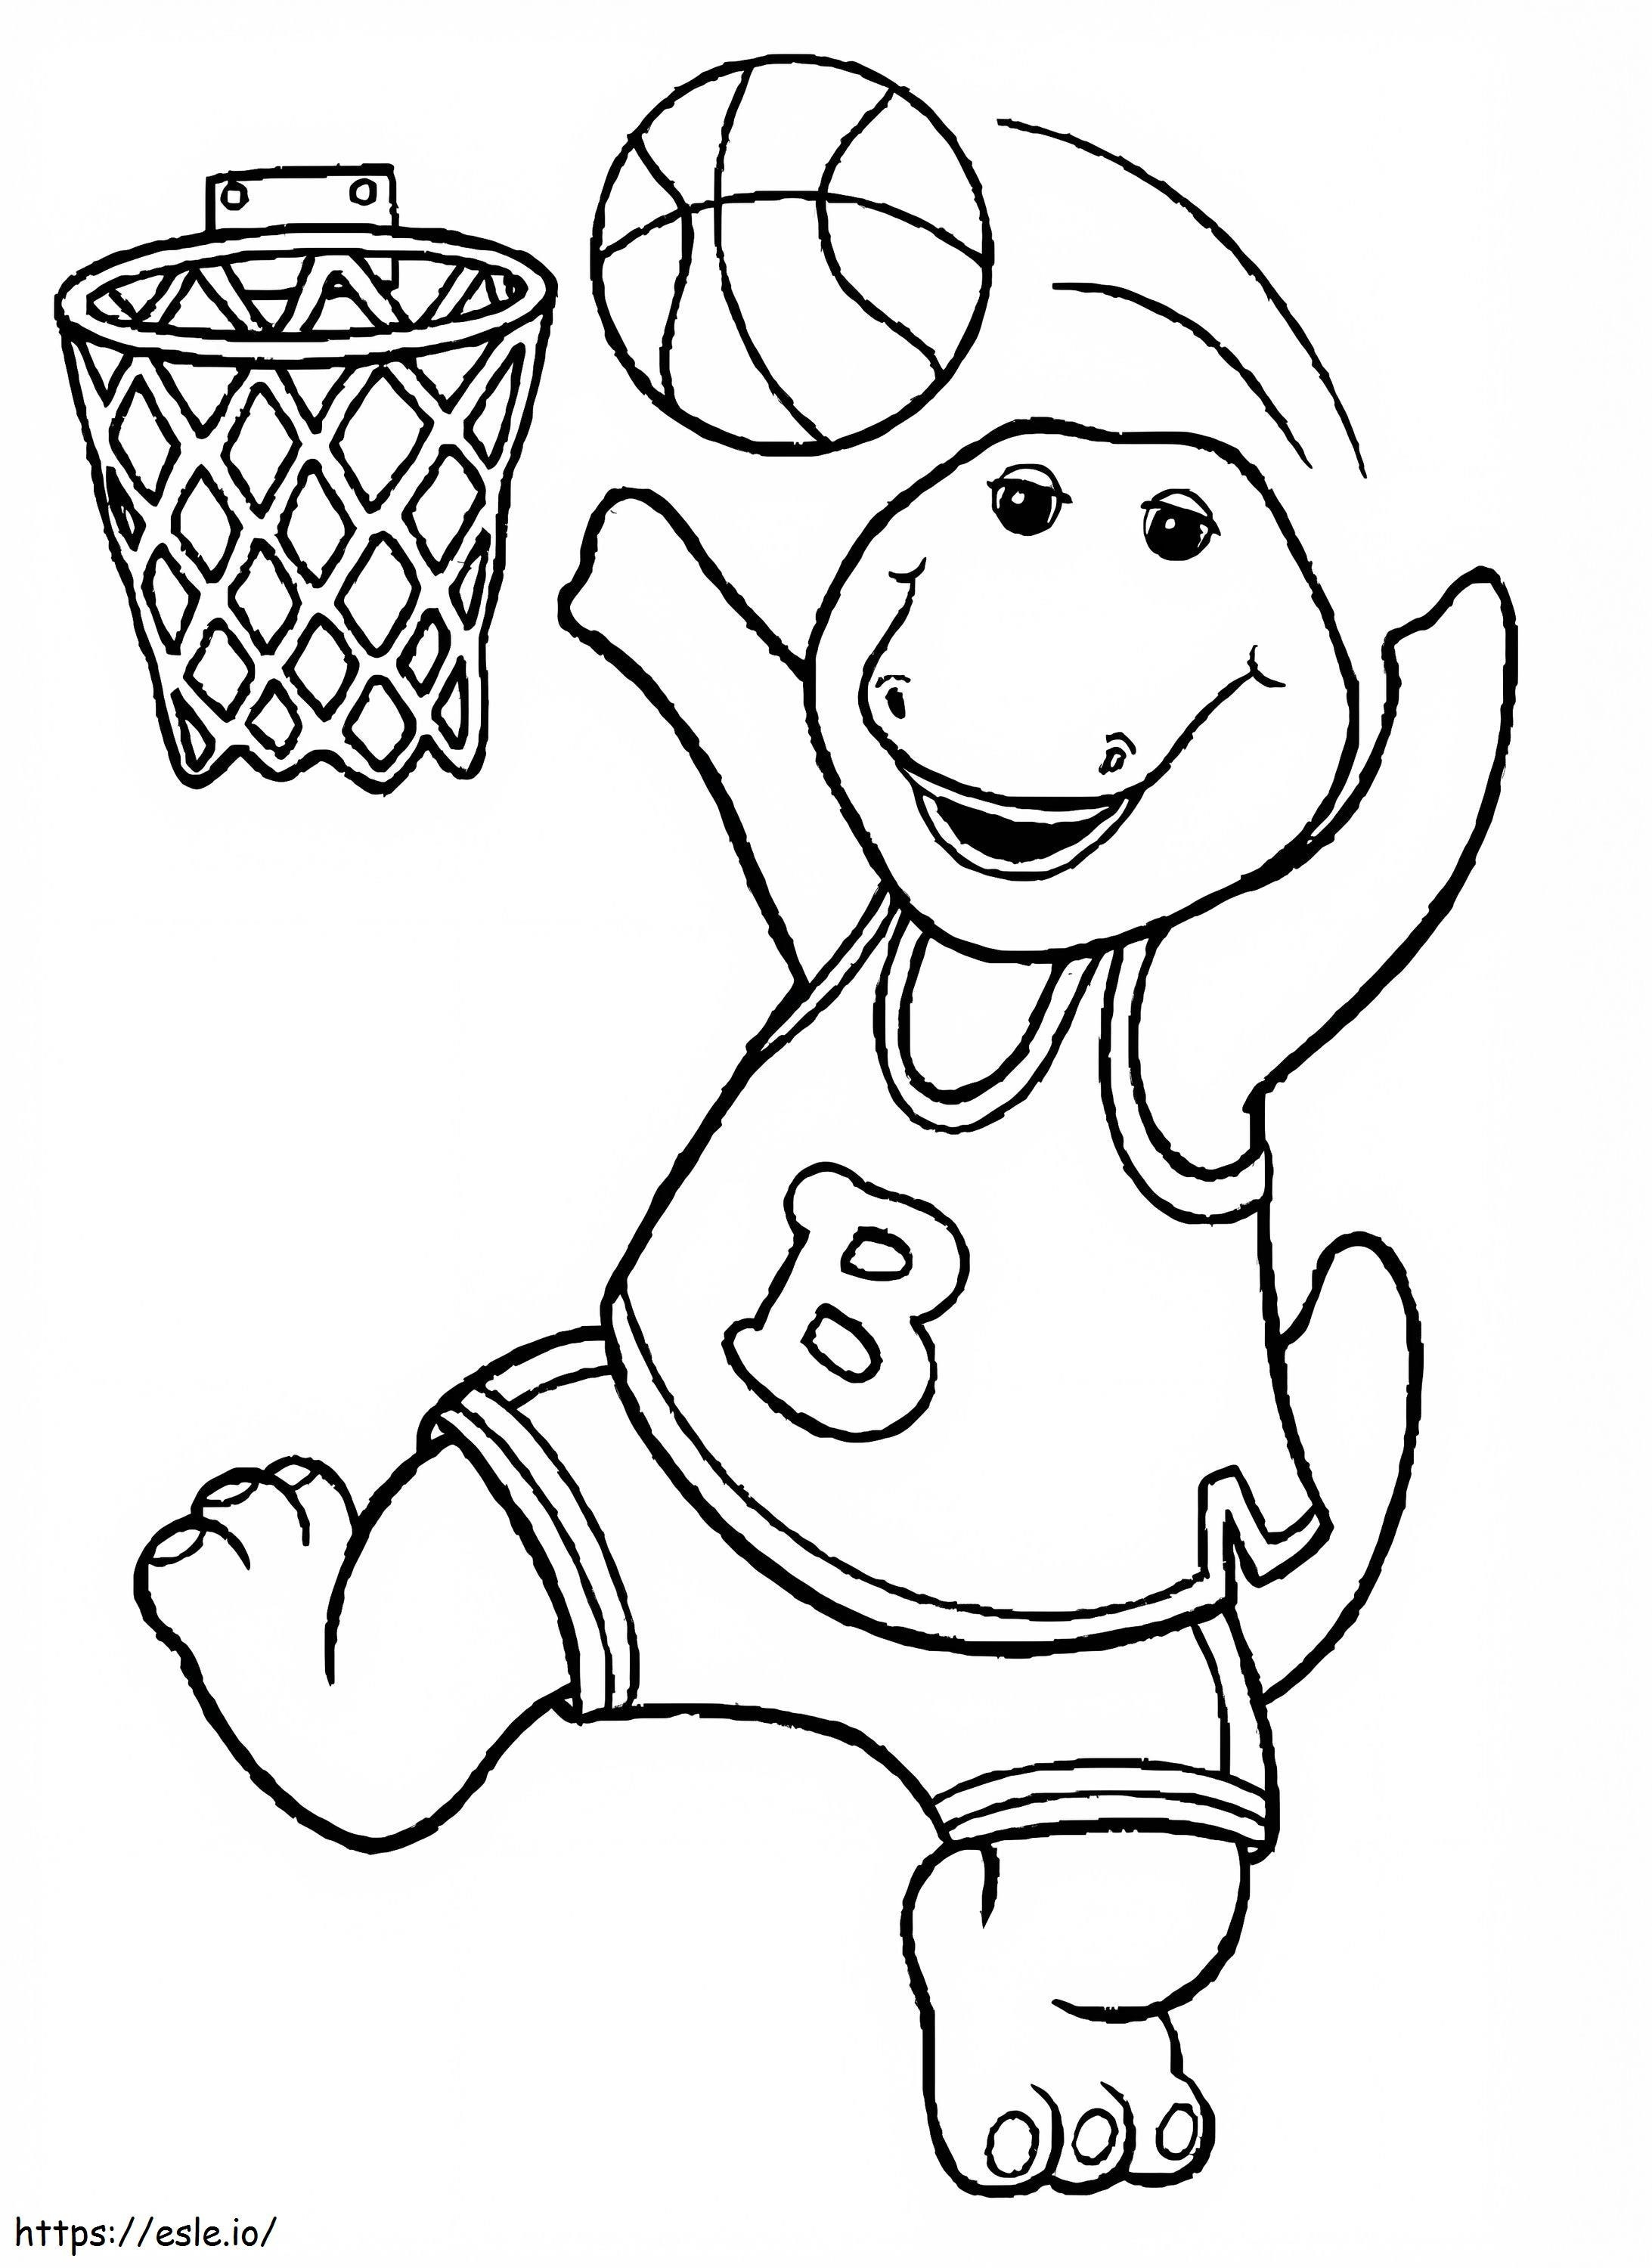 Barney Basketbol Oynuyor boyama